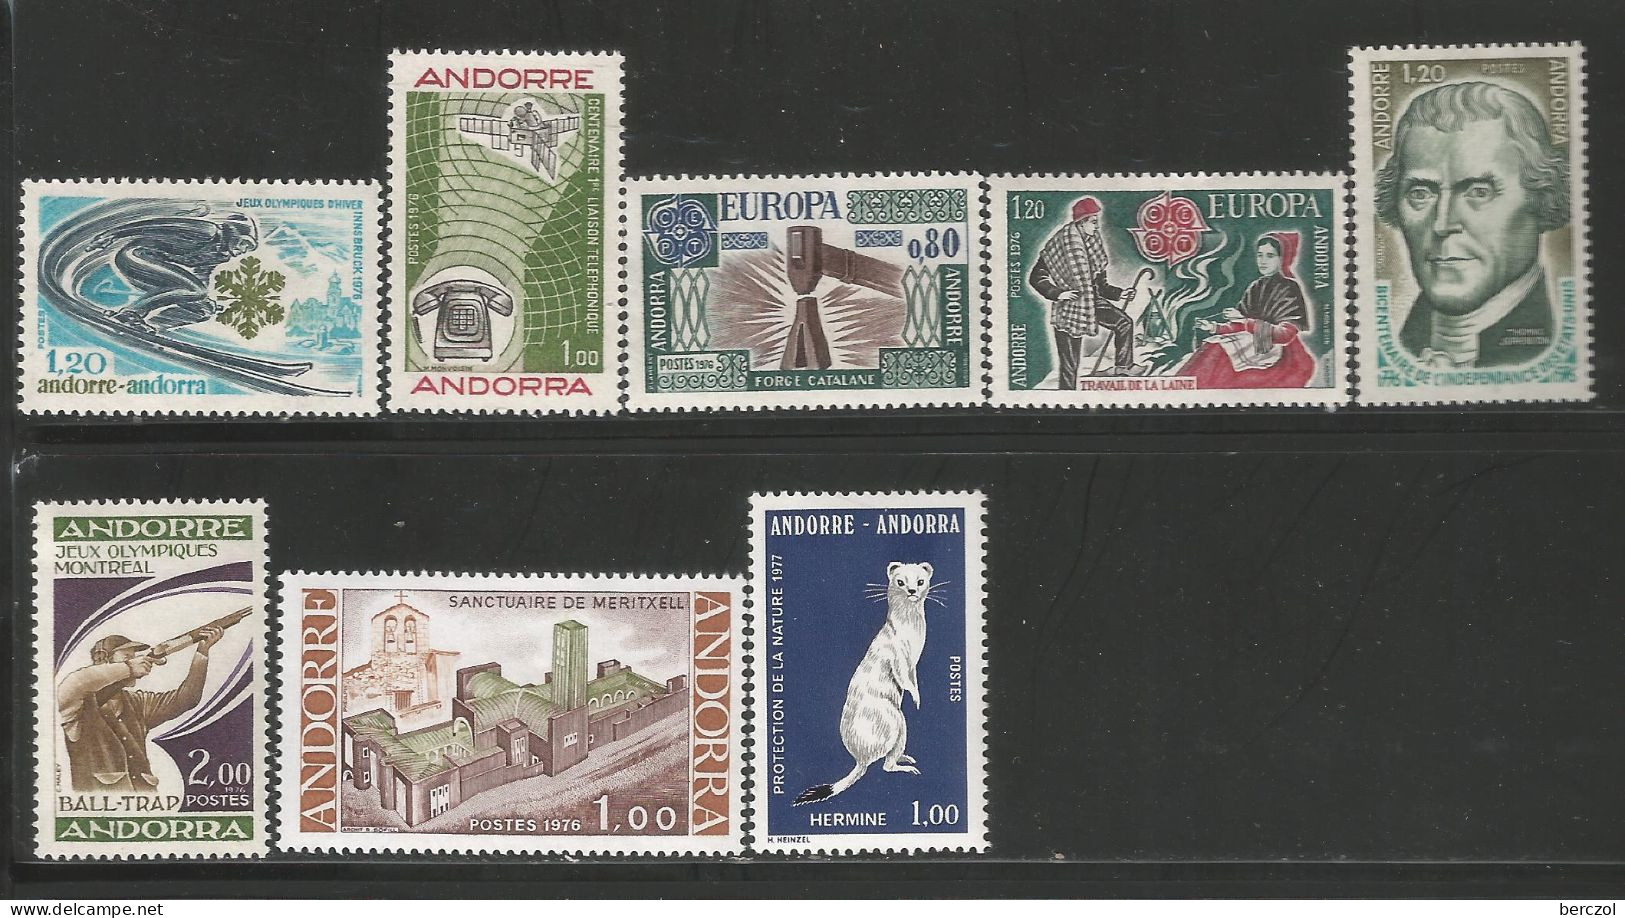 ANDORRE ANNEE 1976 LOT DE 8 TP N°251 à 257,259 NEUFS** MNH TB COTE 24,00 € - Unused Stamps